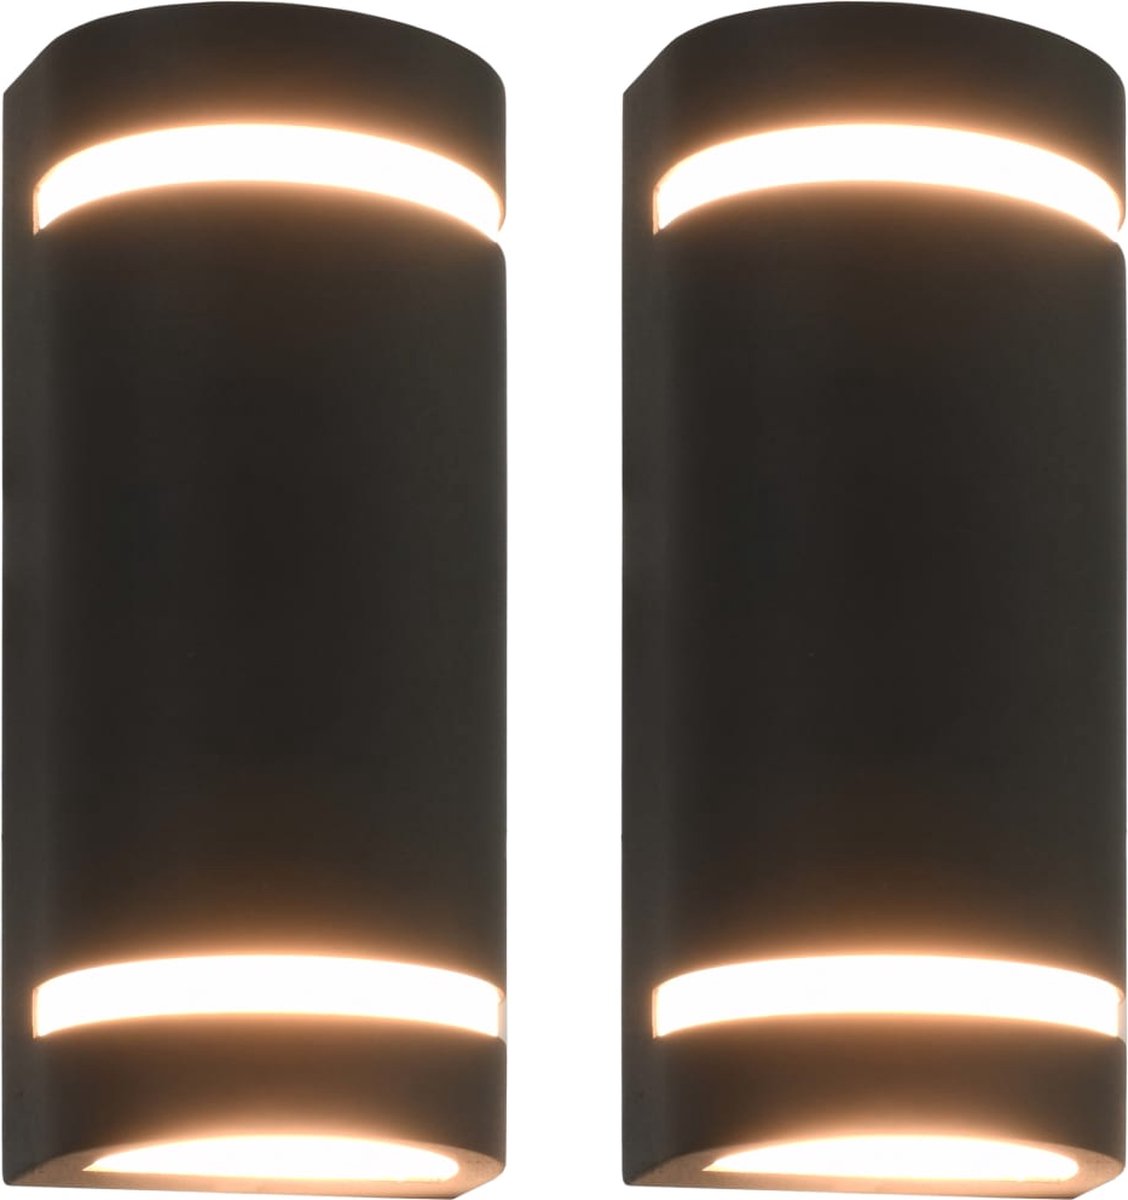 Beroli - Buitenwandlampen - 2 st - 35 W - Halfrond - Zwart: Stijlvolle en Functionele Buitenverlichting voor je Huis